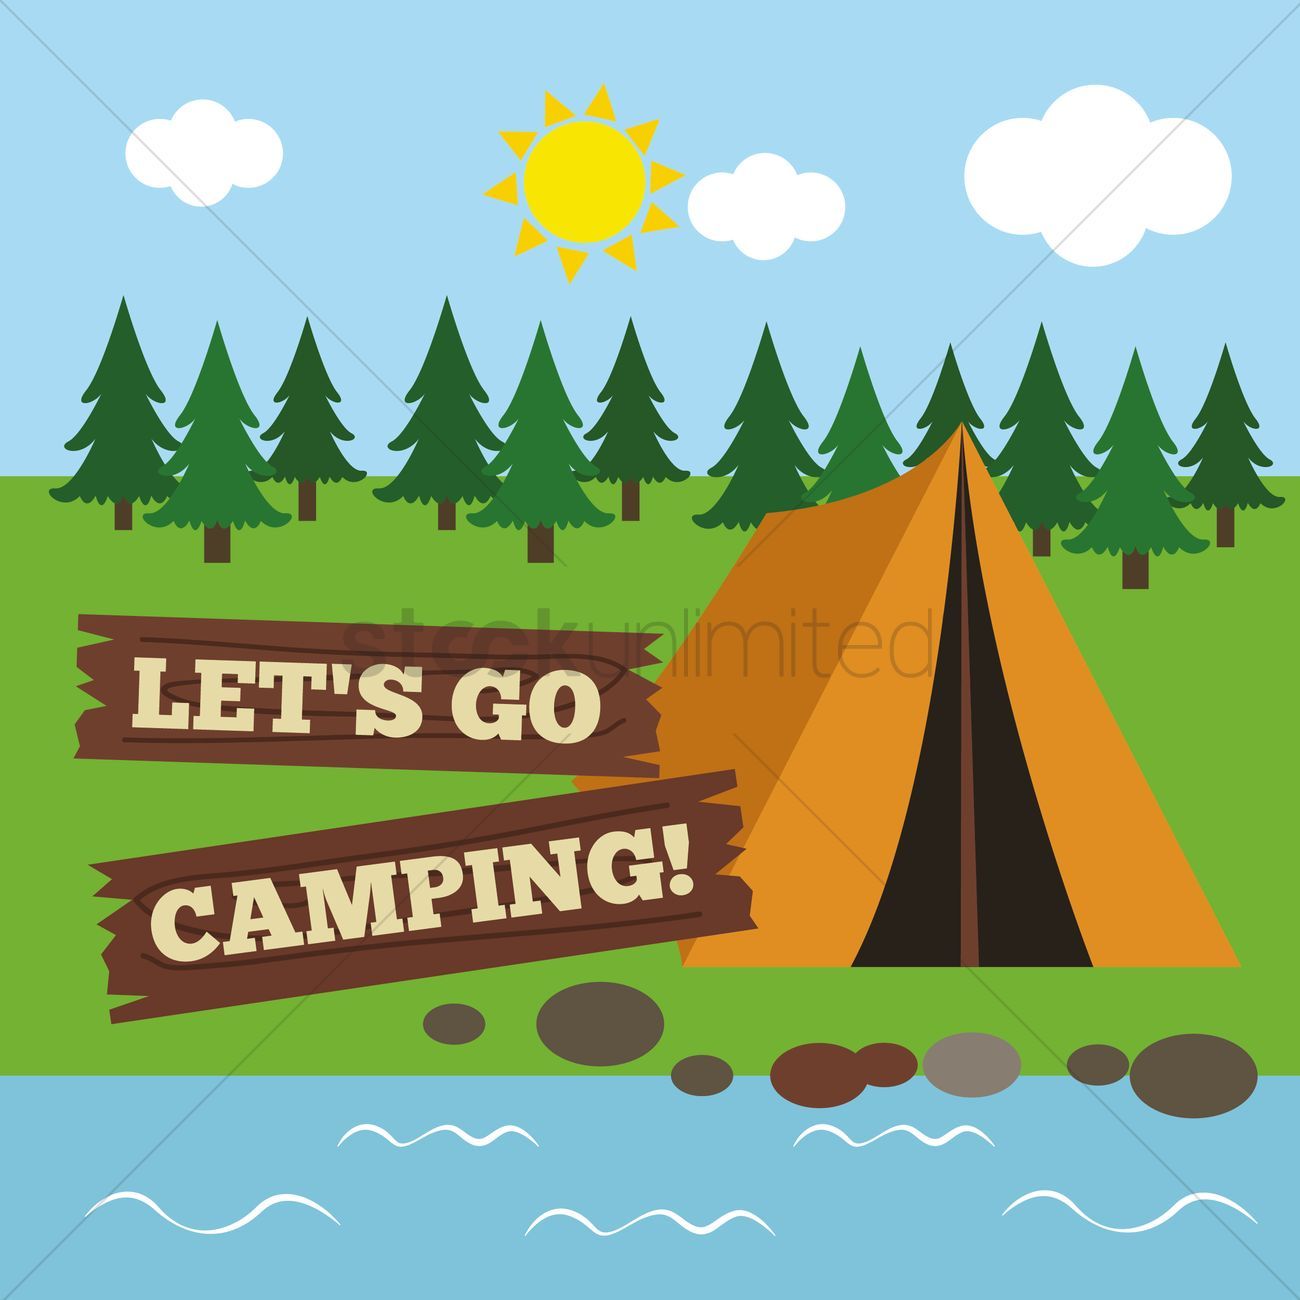 Go camping clipart 4 » Clipart Portal.